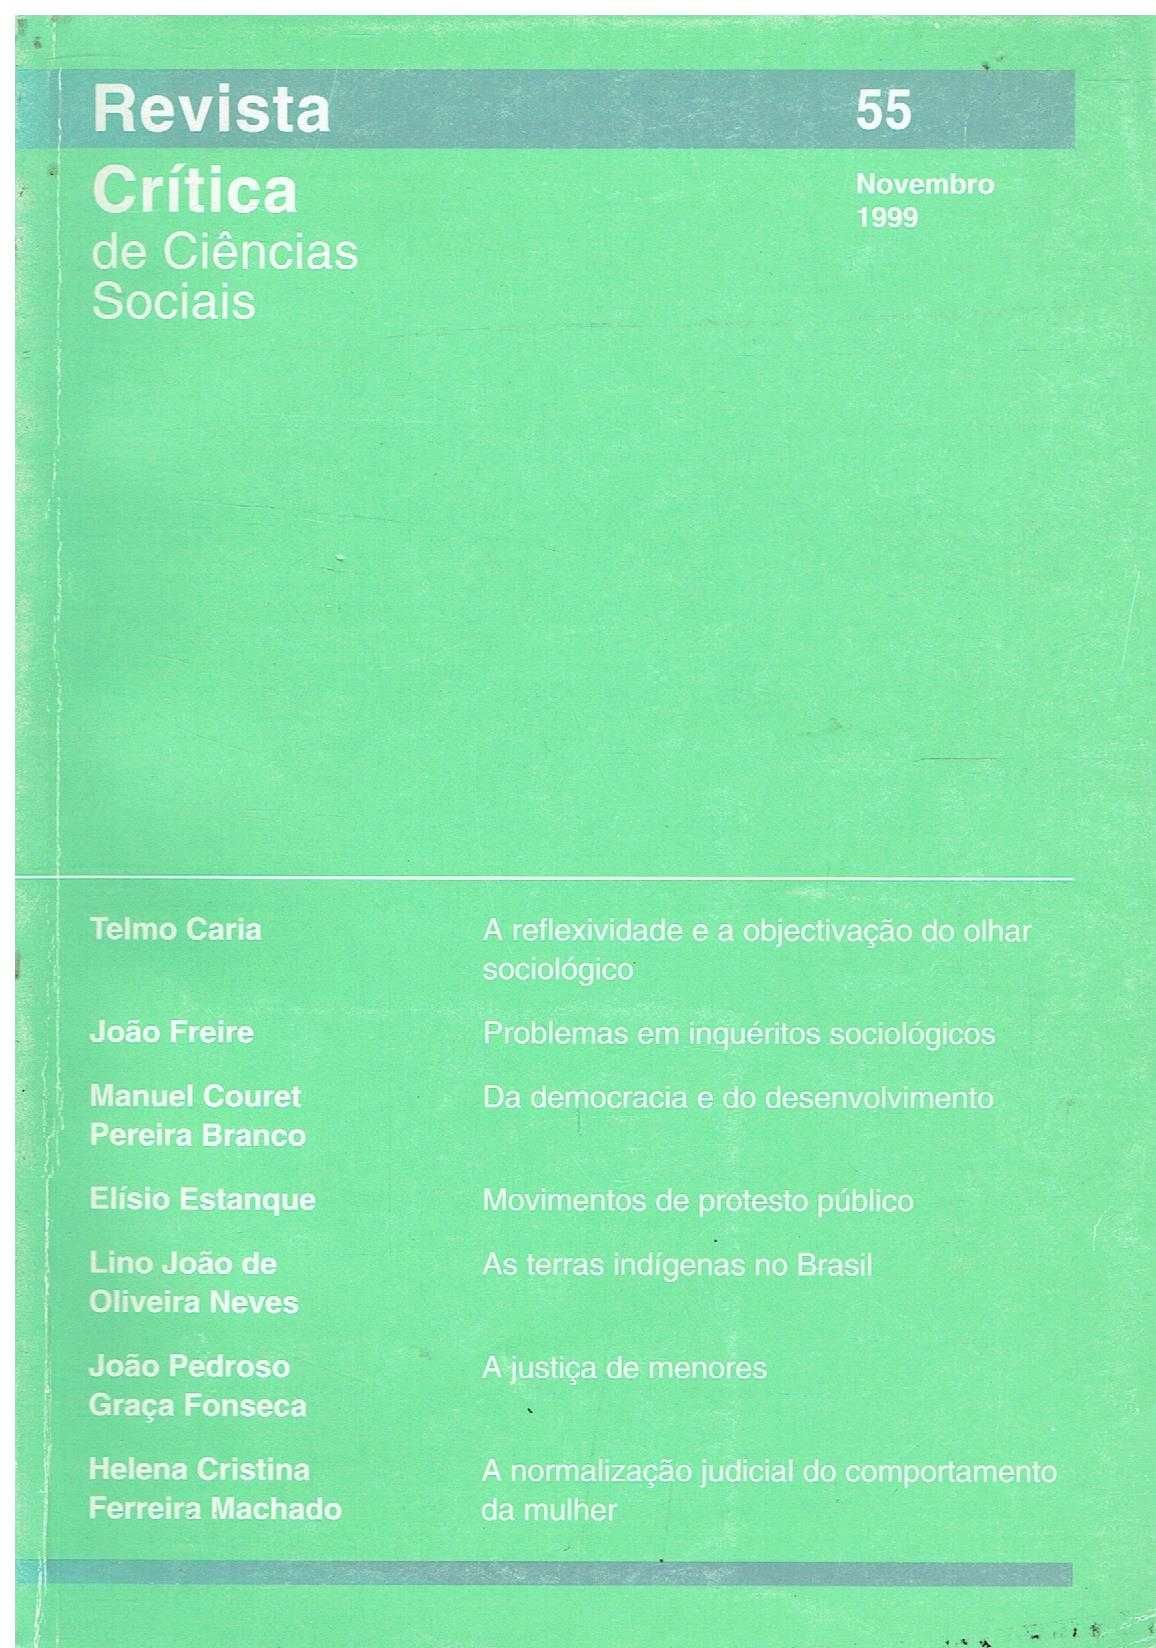 12143
	
Revista crítica de ciências sociais Nº 55